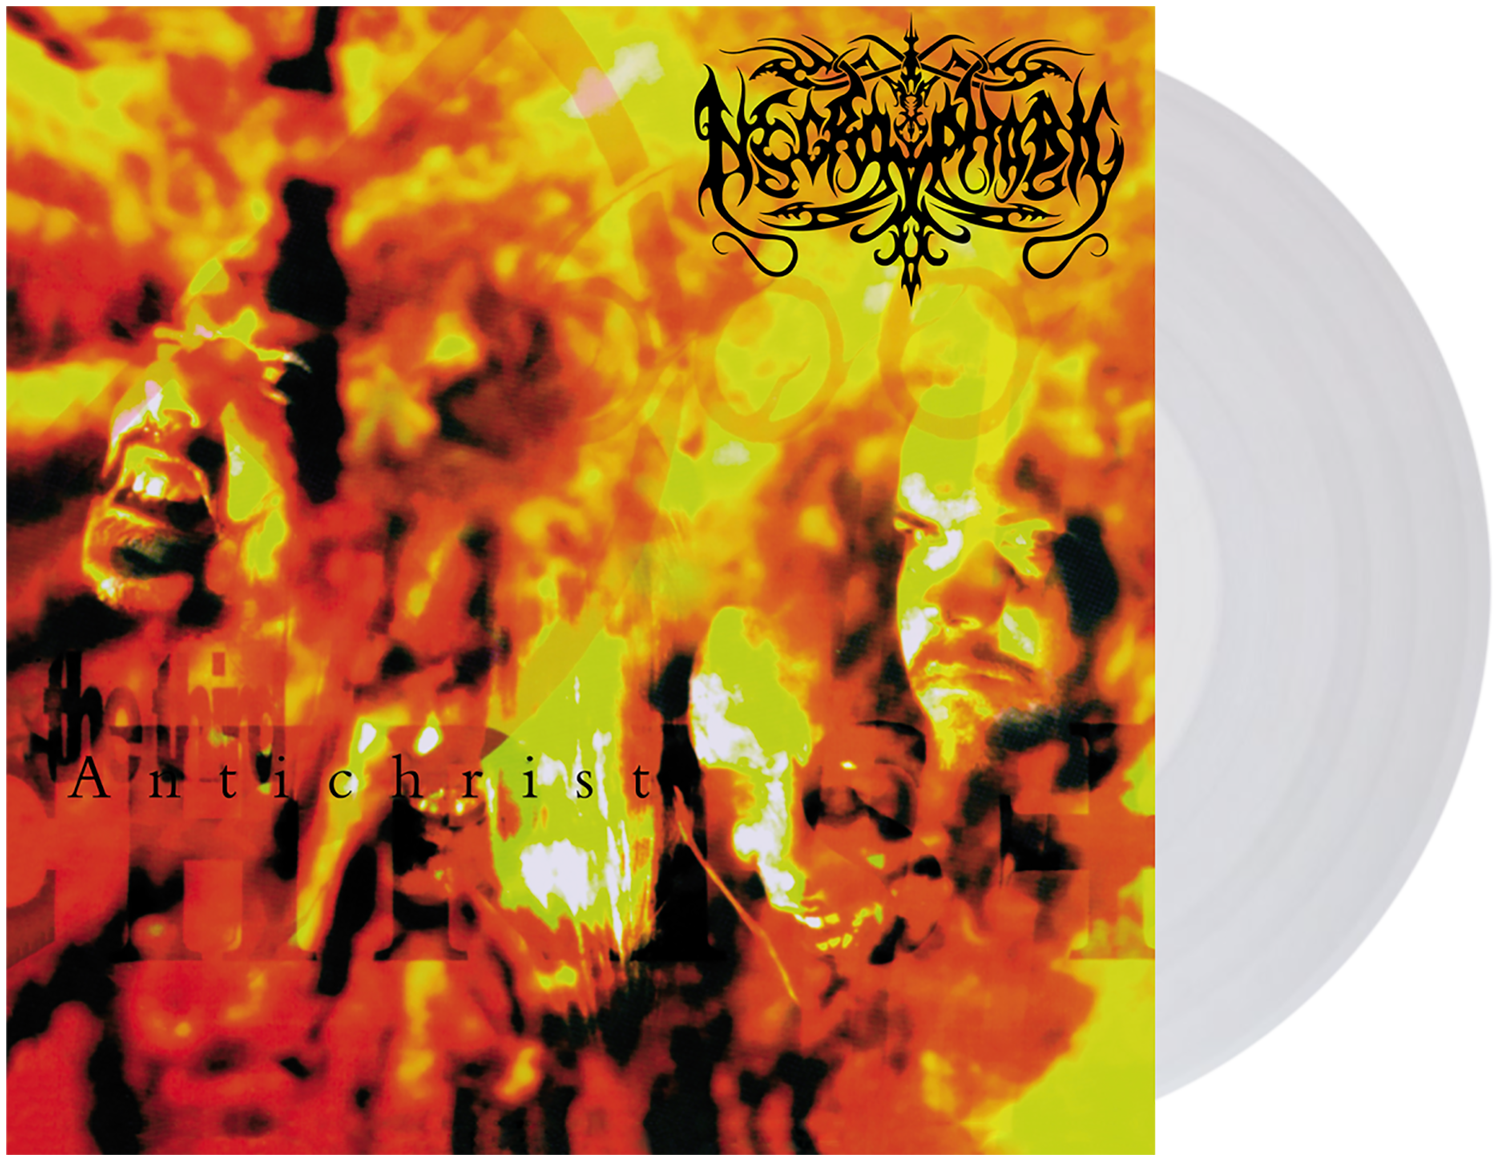 Necrophobic - The third antichrist - LP - farbig - EMP Exklusiv!